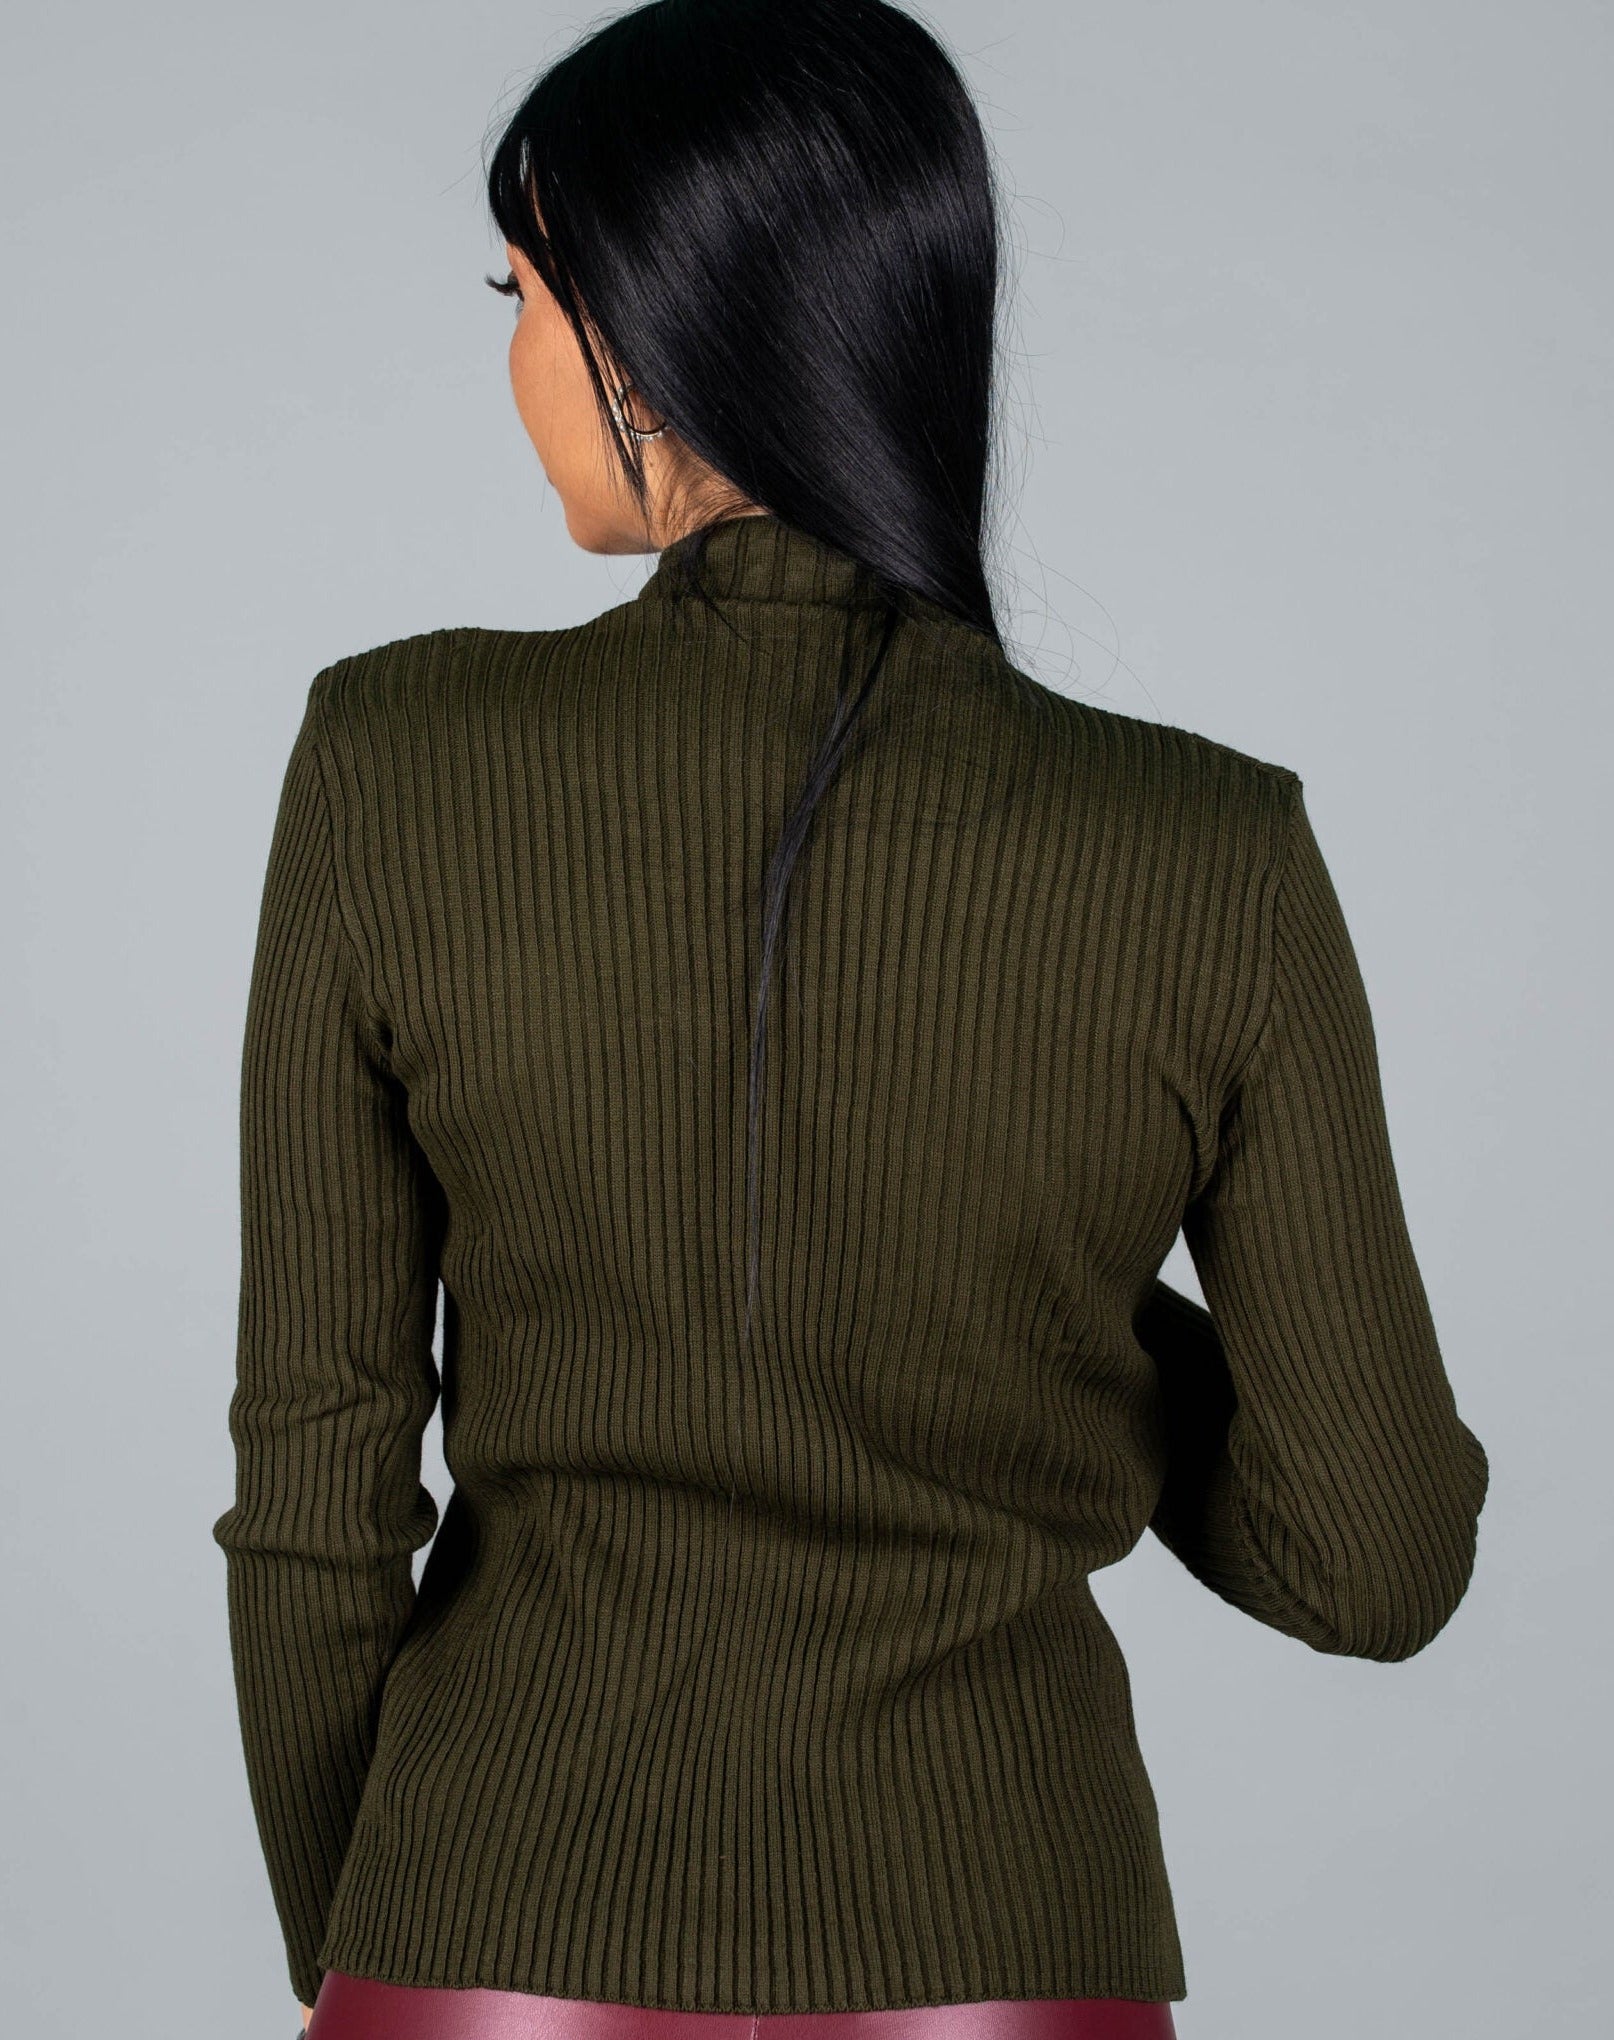 Дамска блуза FINERSA  https://bvseductive.com/products/дамска-блуза-finersa-1  70 % вълна 30 % акрил стилна дамска блуза в маслено зелен цвят&nbsp; моделът е с ефектни цветчета&nbsp; и поло яка висококачествена изработка и модерно излъчване кройка по тялото, подходяща за всяка фигура стилно предложение за сезон Есен/Зима